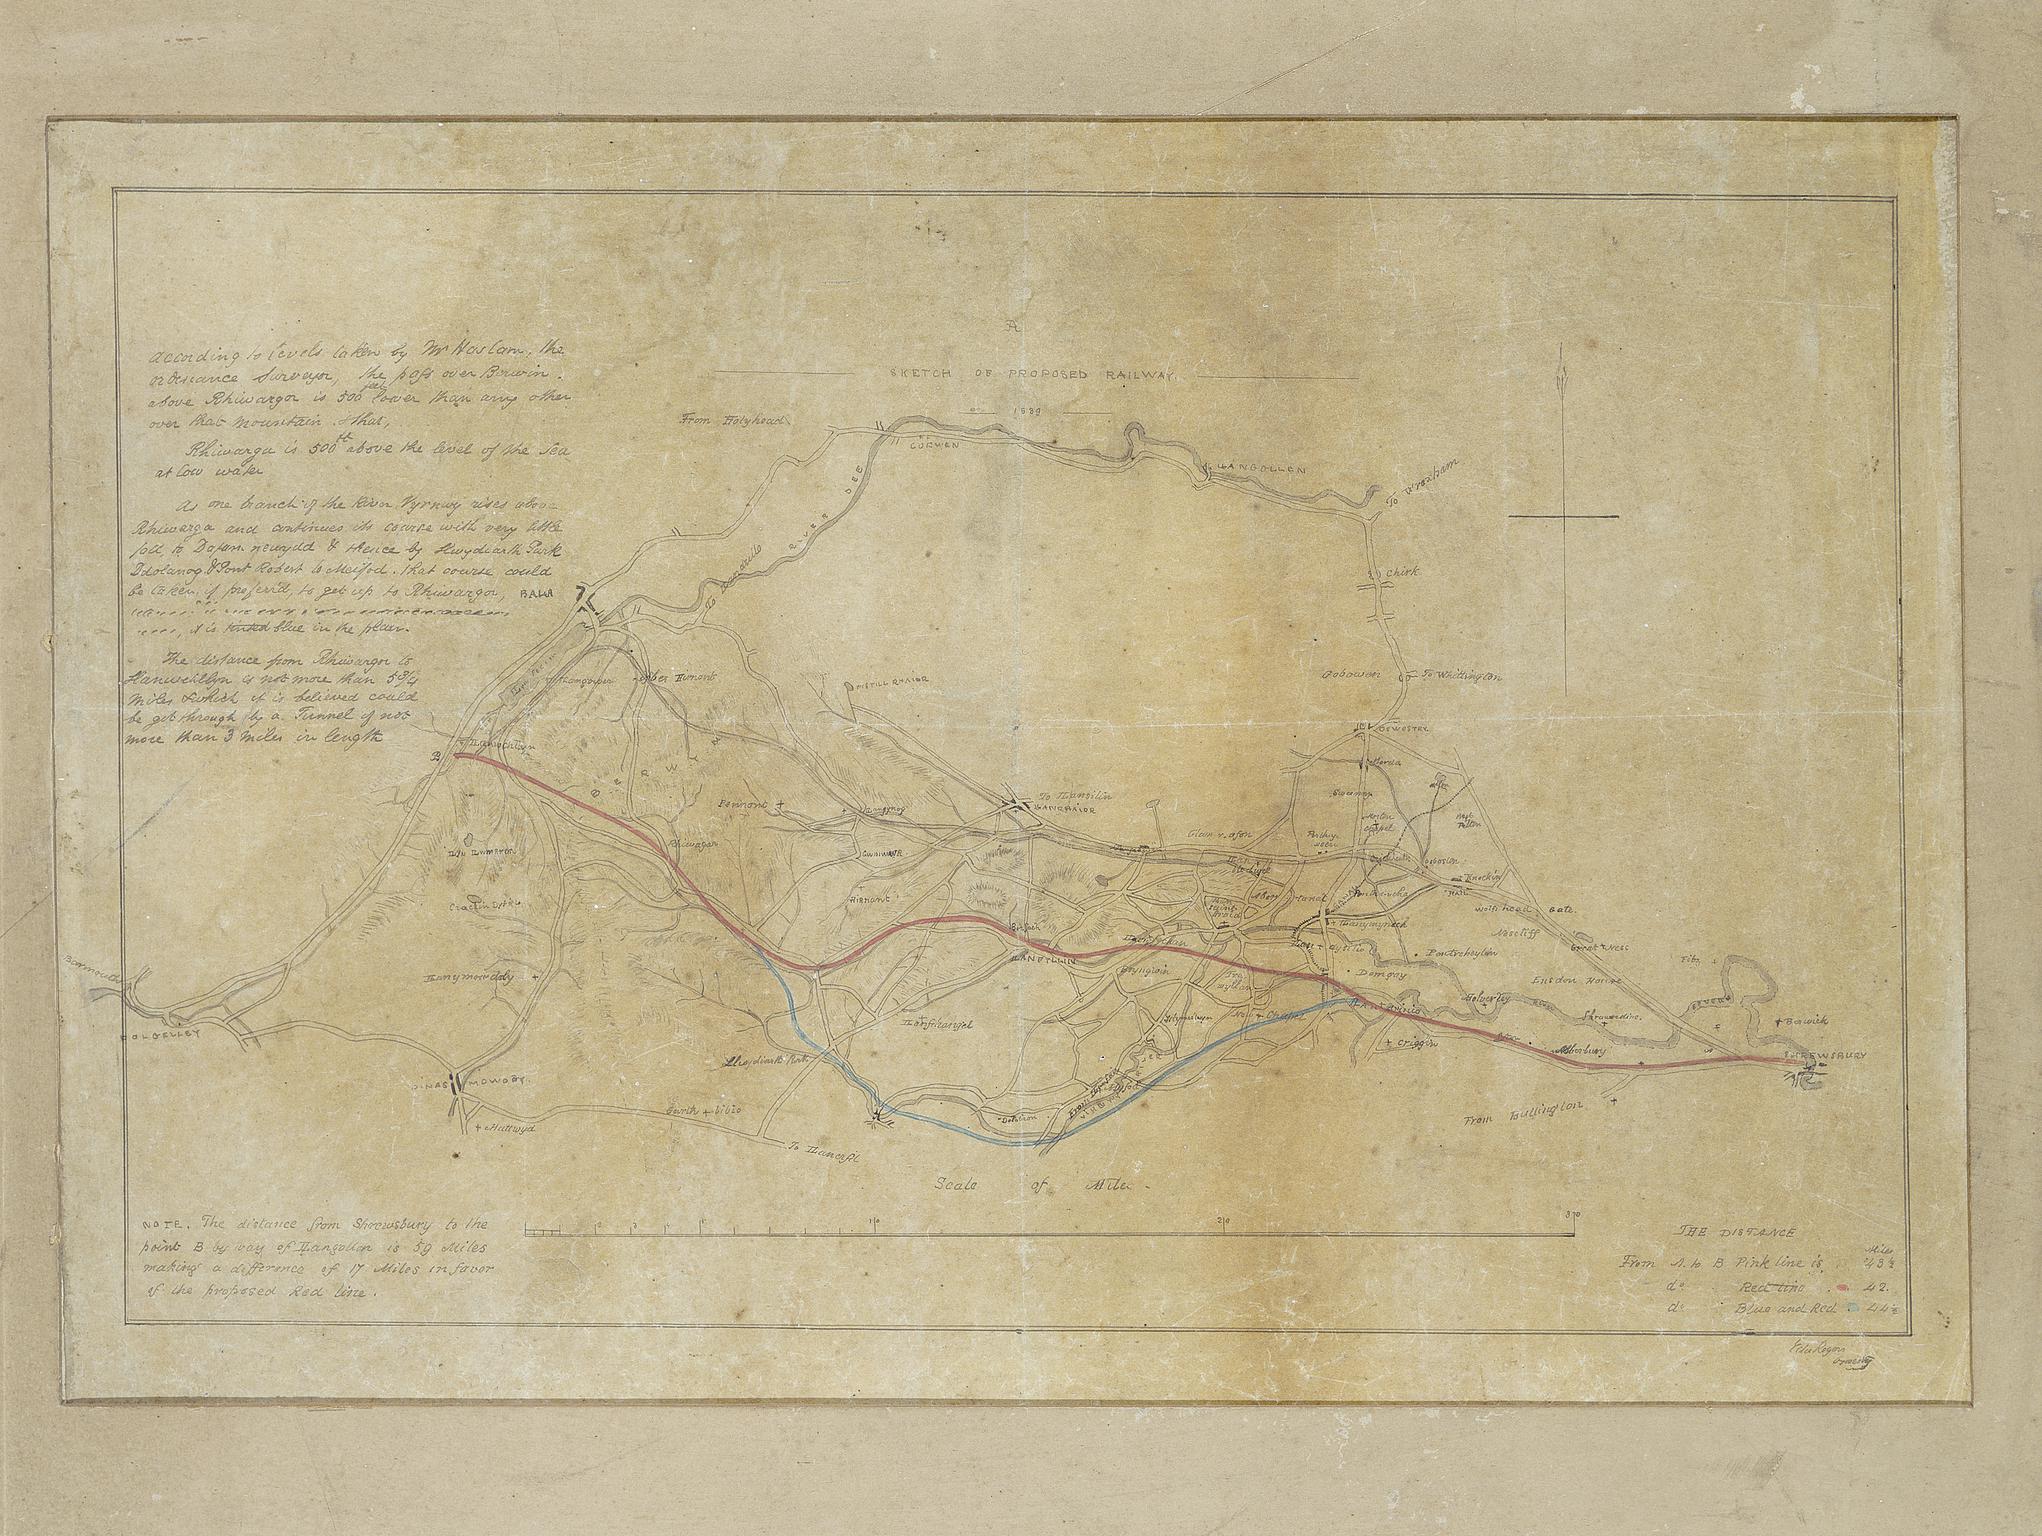 A Sketch of Proposed Railway, 1889, Shrewsbury to Llanuchllyn (map)